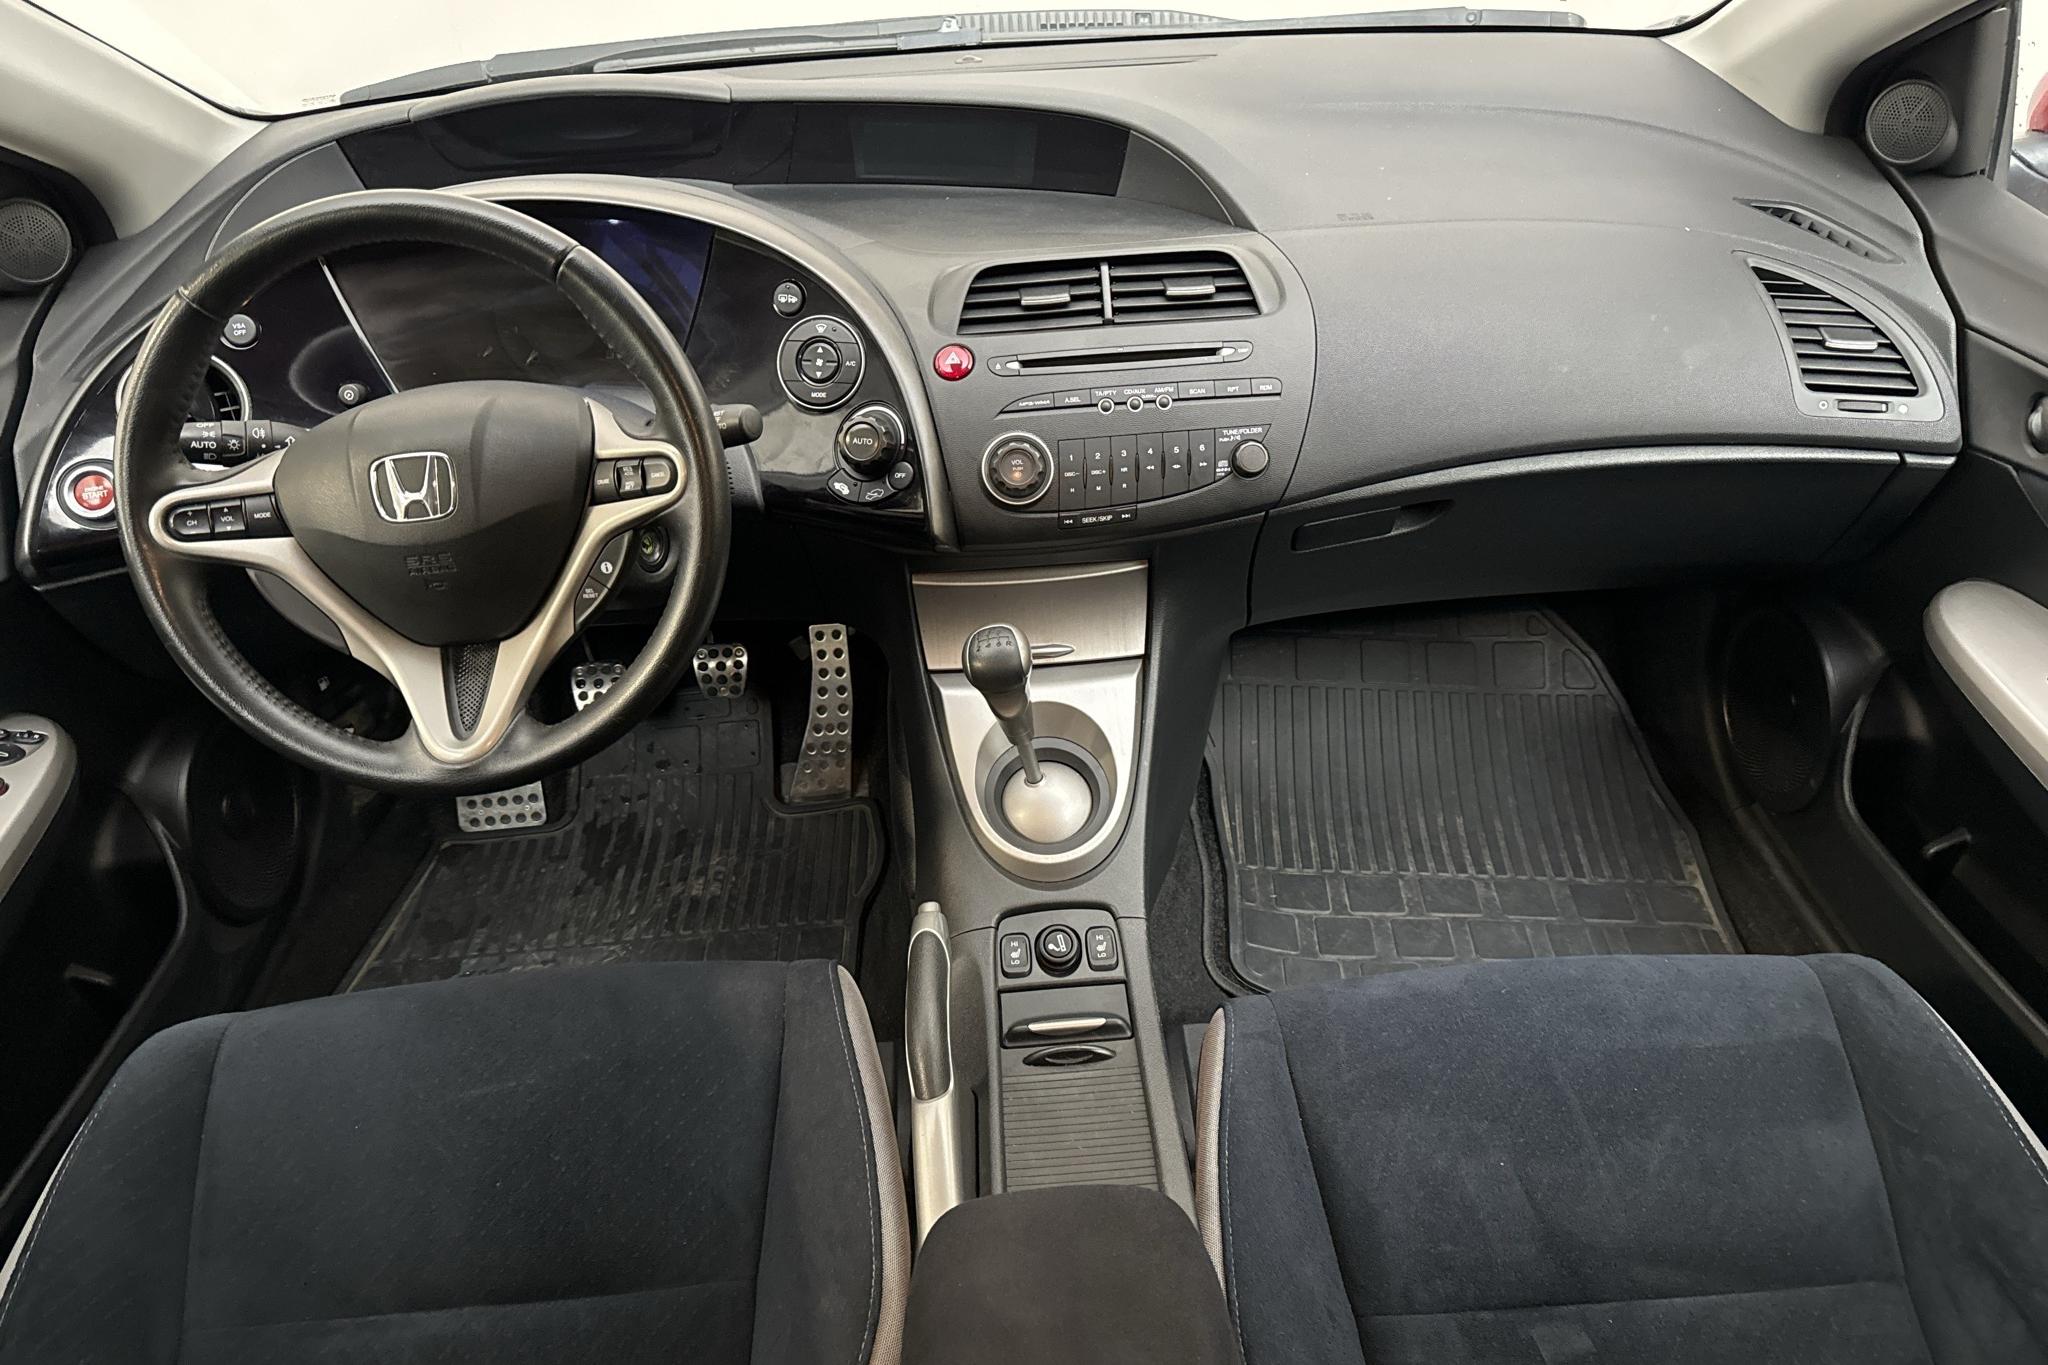 Honda Civic 1.8 5dr (140hk) - 102 440 km - Manual - red - 2007